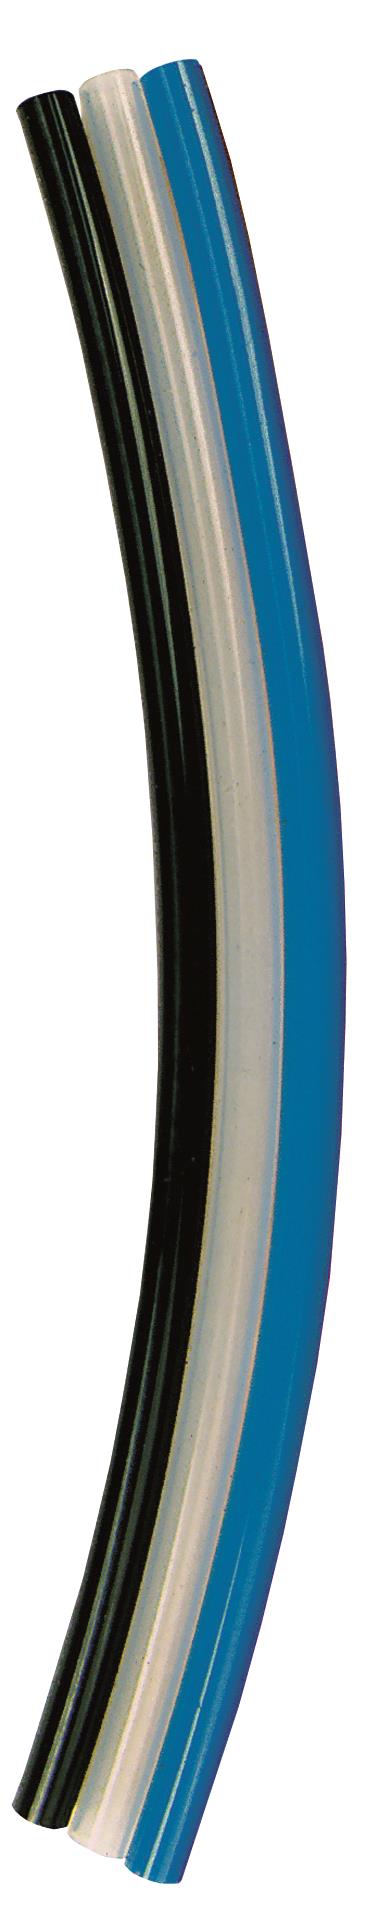 60°C blau 1,21 €/m PVC-Schlauch ID ø 5mm AD ø 8mm L 10m Wandstärke 1,5mm T.max 